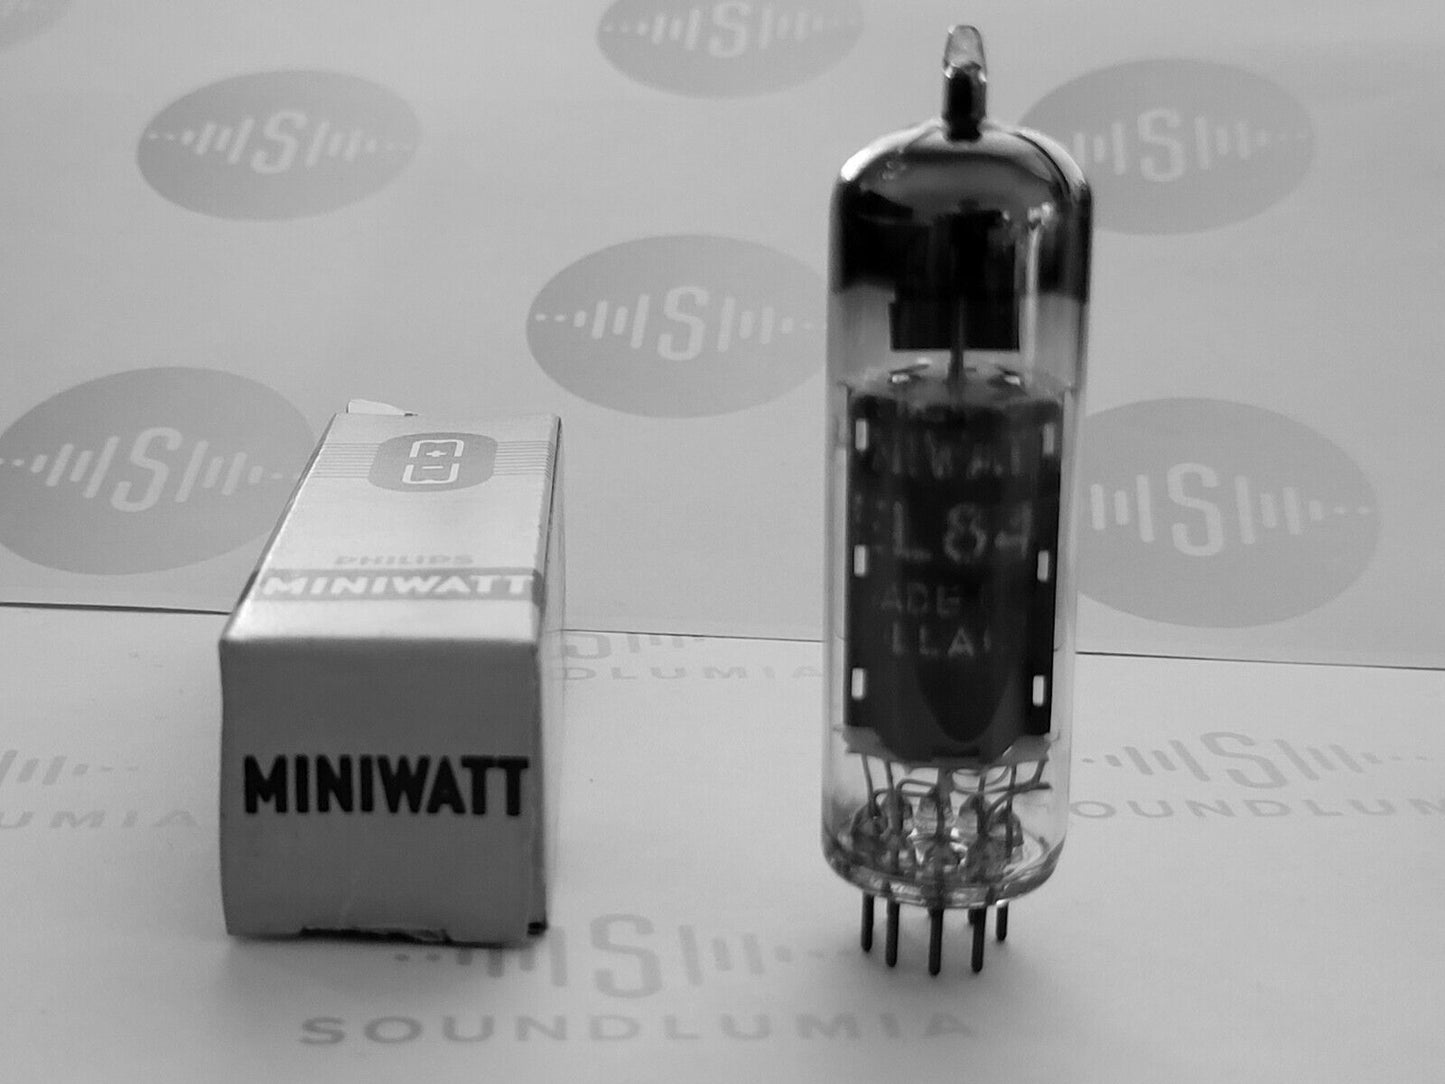 1x Philips Miniwatt EL84 6BQ5 D-getter - Sittard, NL 1958 rX3 - Bottom Codes